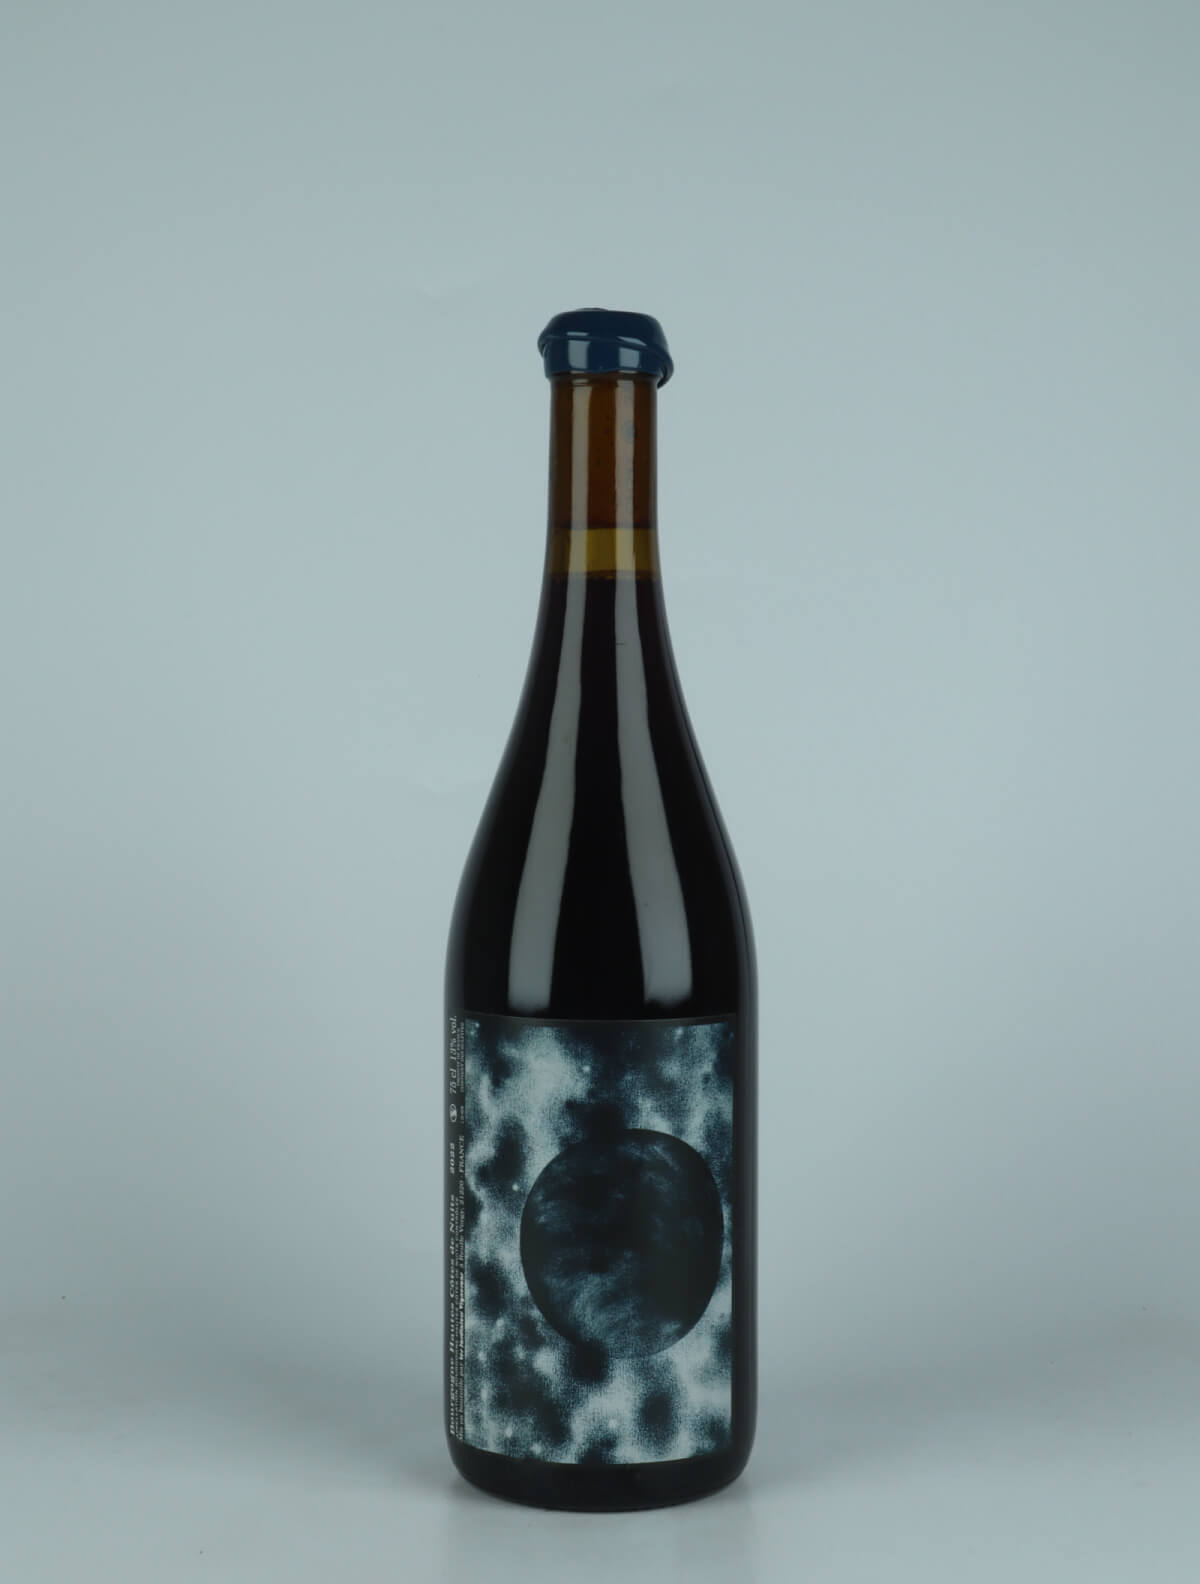 En flaske 2022 Hautes Côtes de Nuits Rødvin fra Les Jardiniers Vignerons, Bourgogne i Frankrig